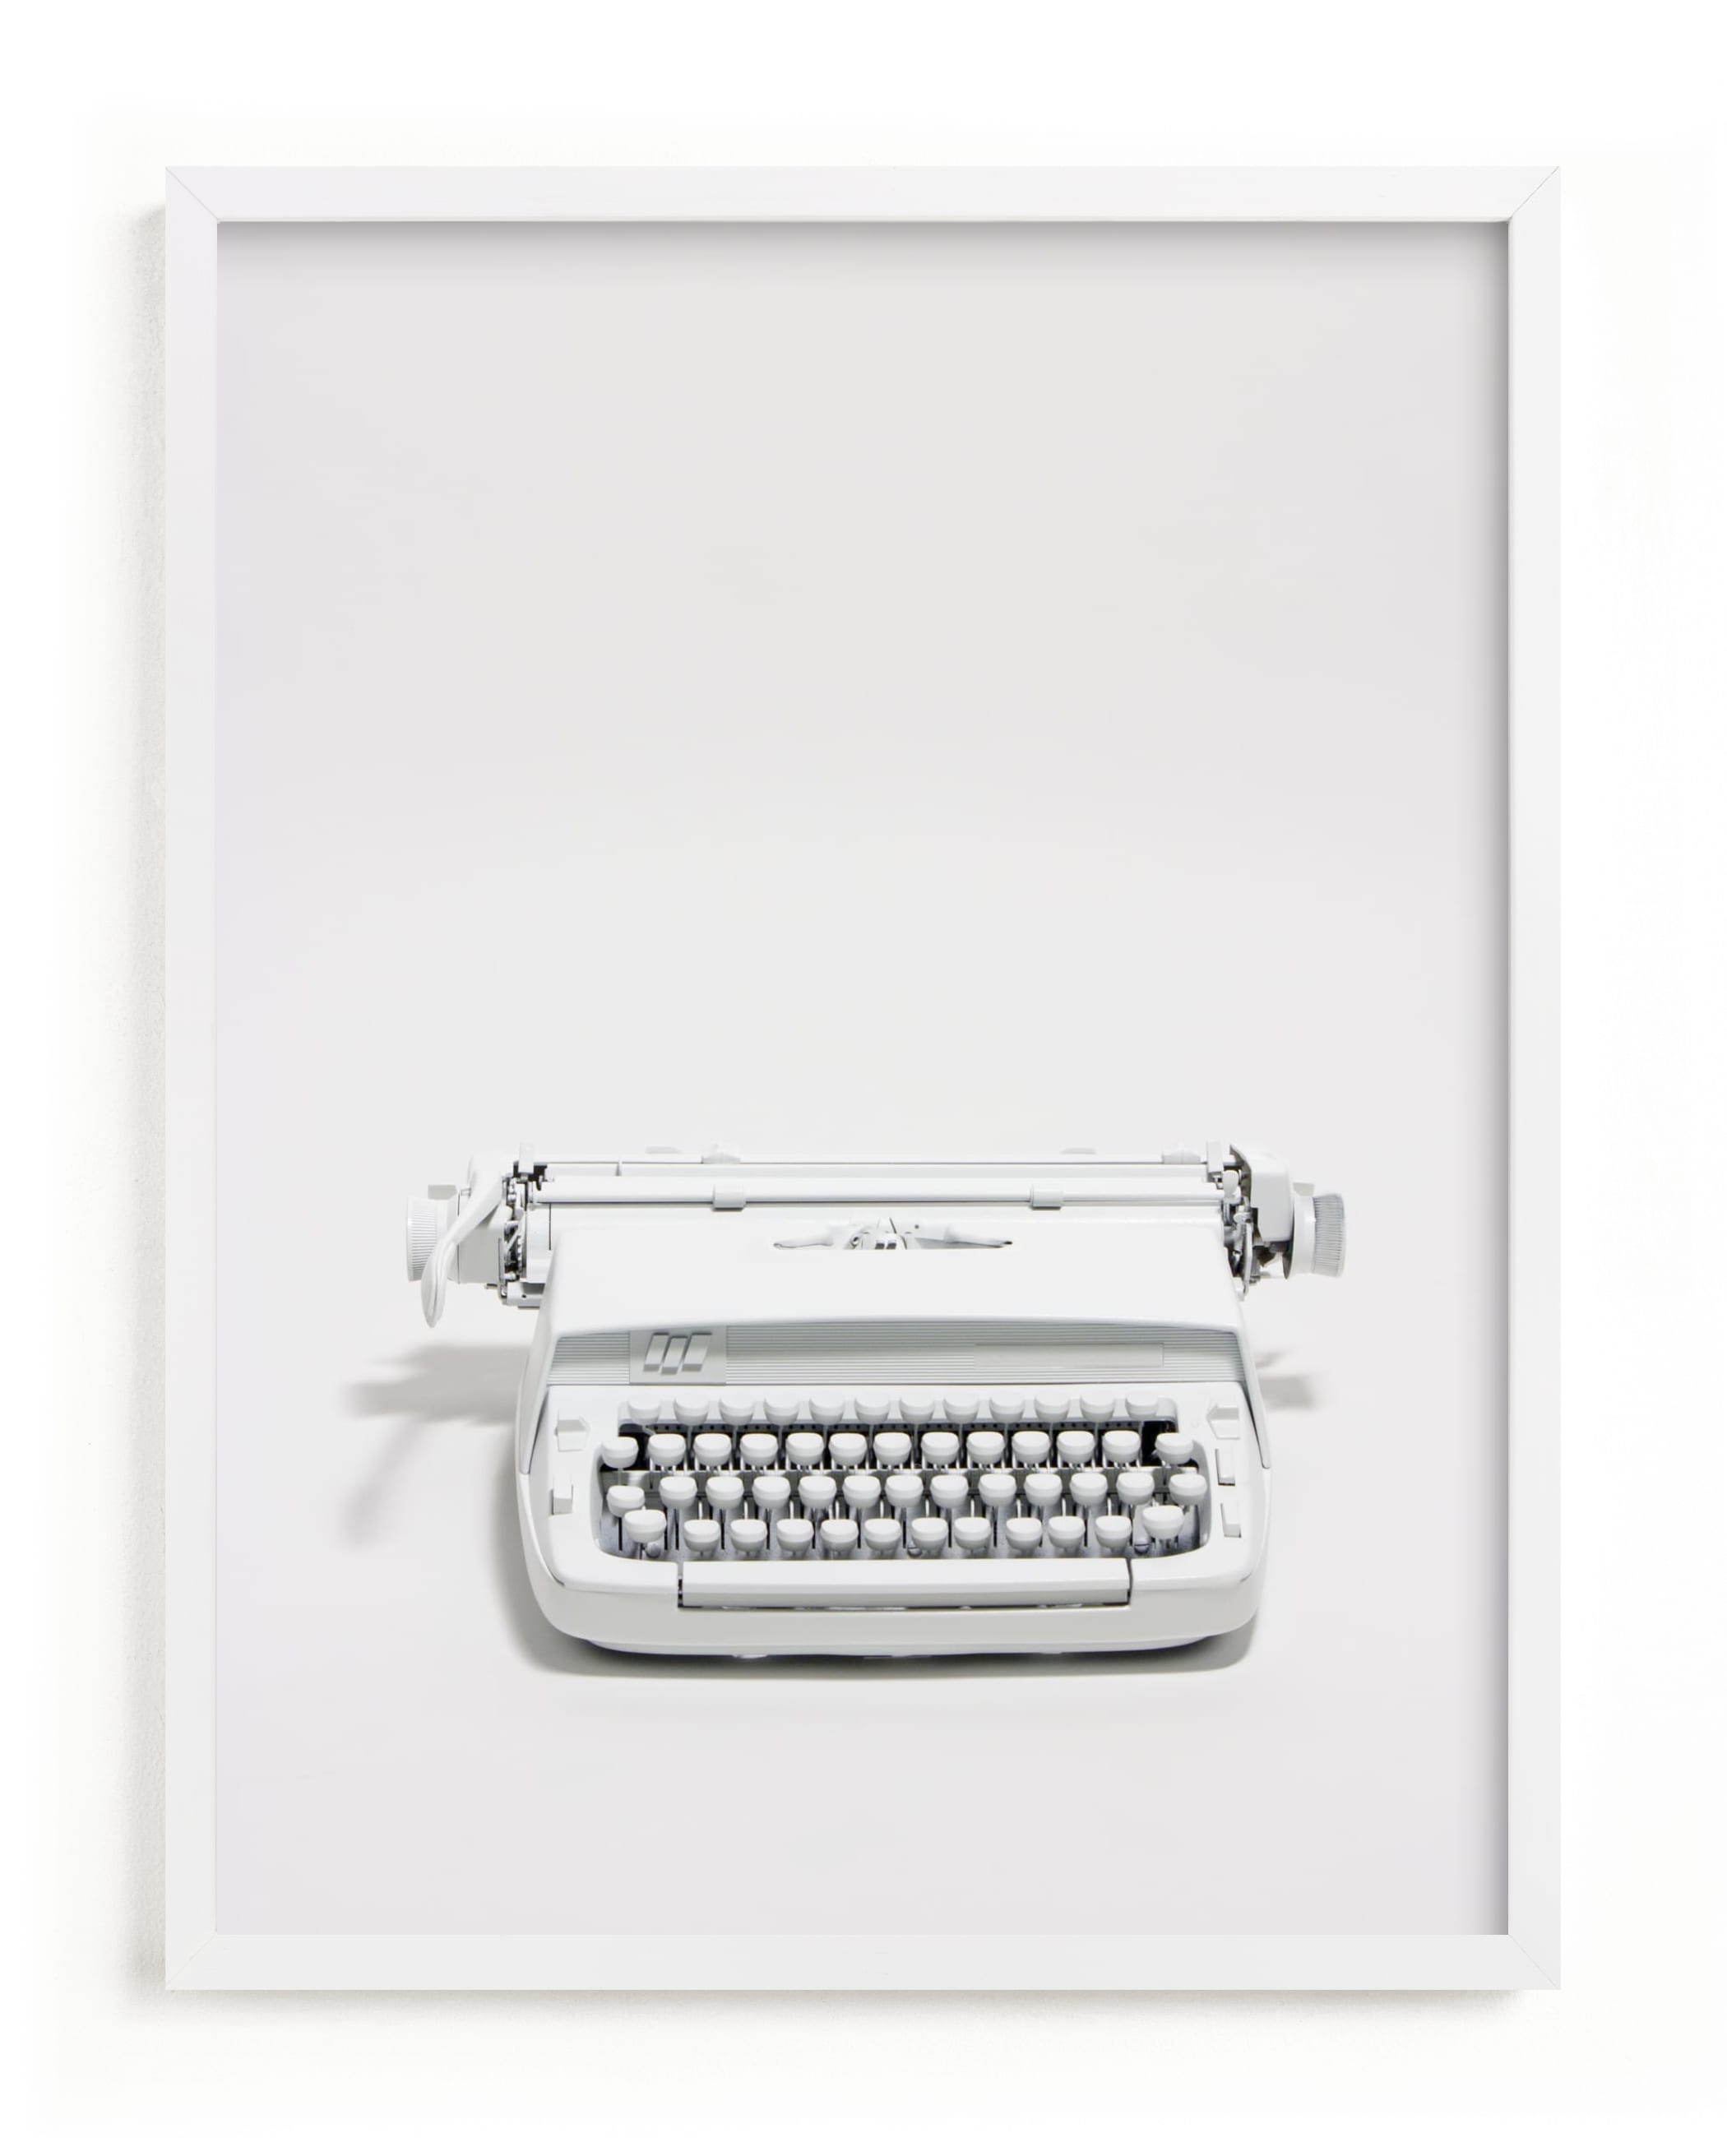 The Typewriter Art Print